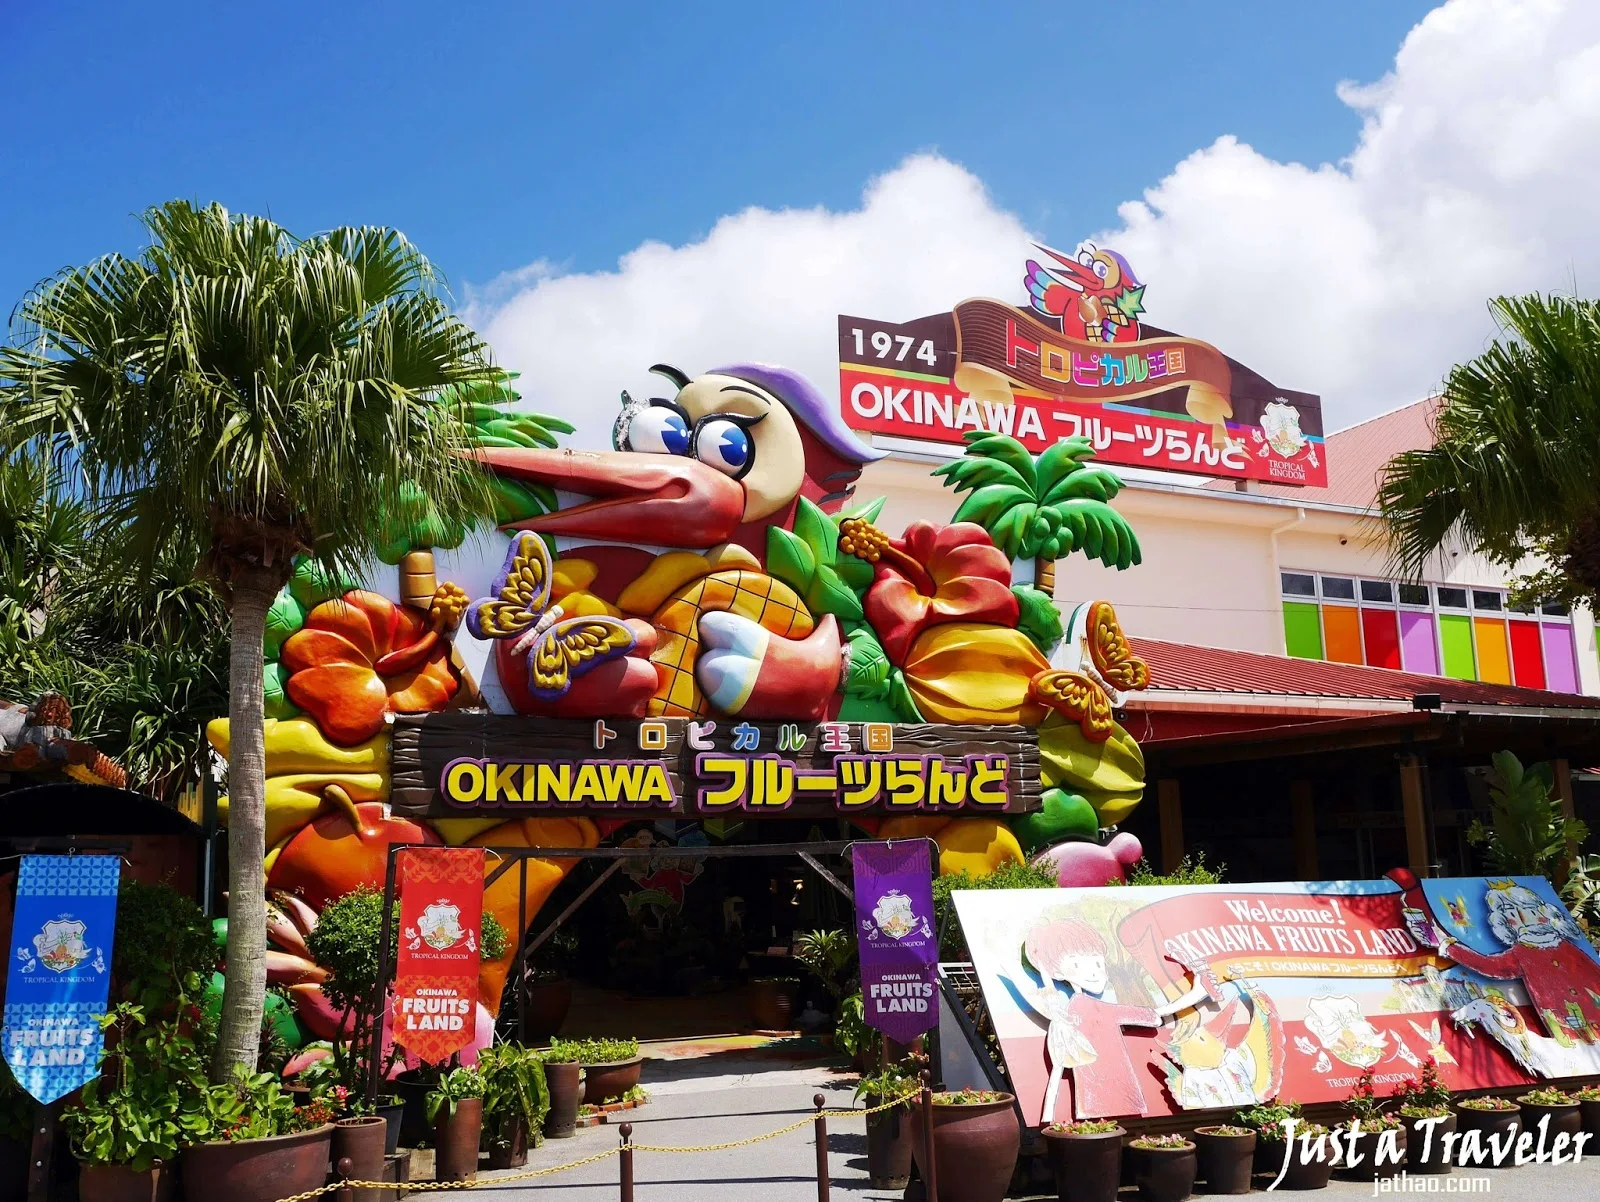 沖繩-沖繩景點-推薦-水果樂園-名護-沖繩自由行景點-沖繩北部景點-沖繩旅遊-沖繩觀光景點-Okinawa-attraction-Fruitland-Nago-Toruist-destination